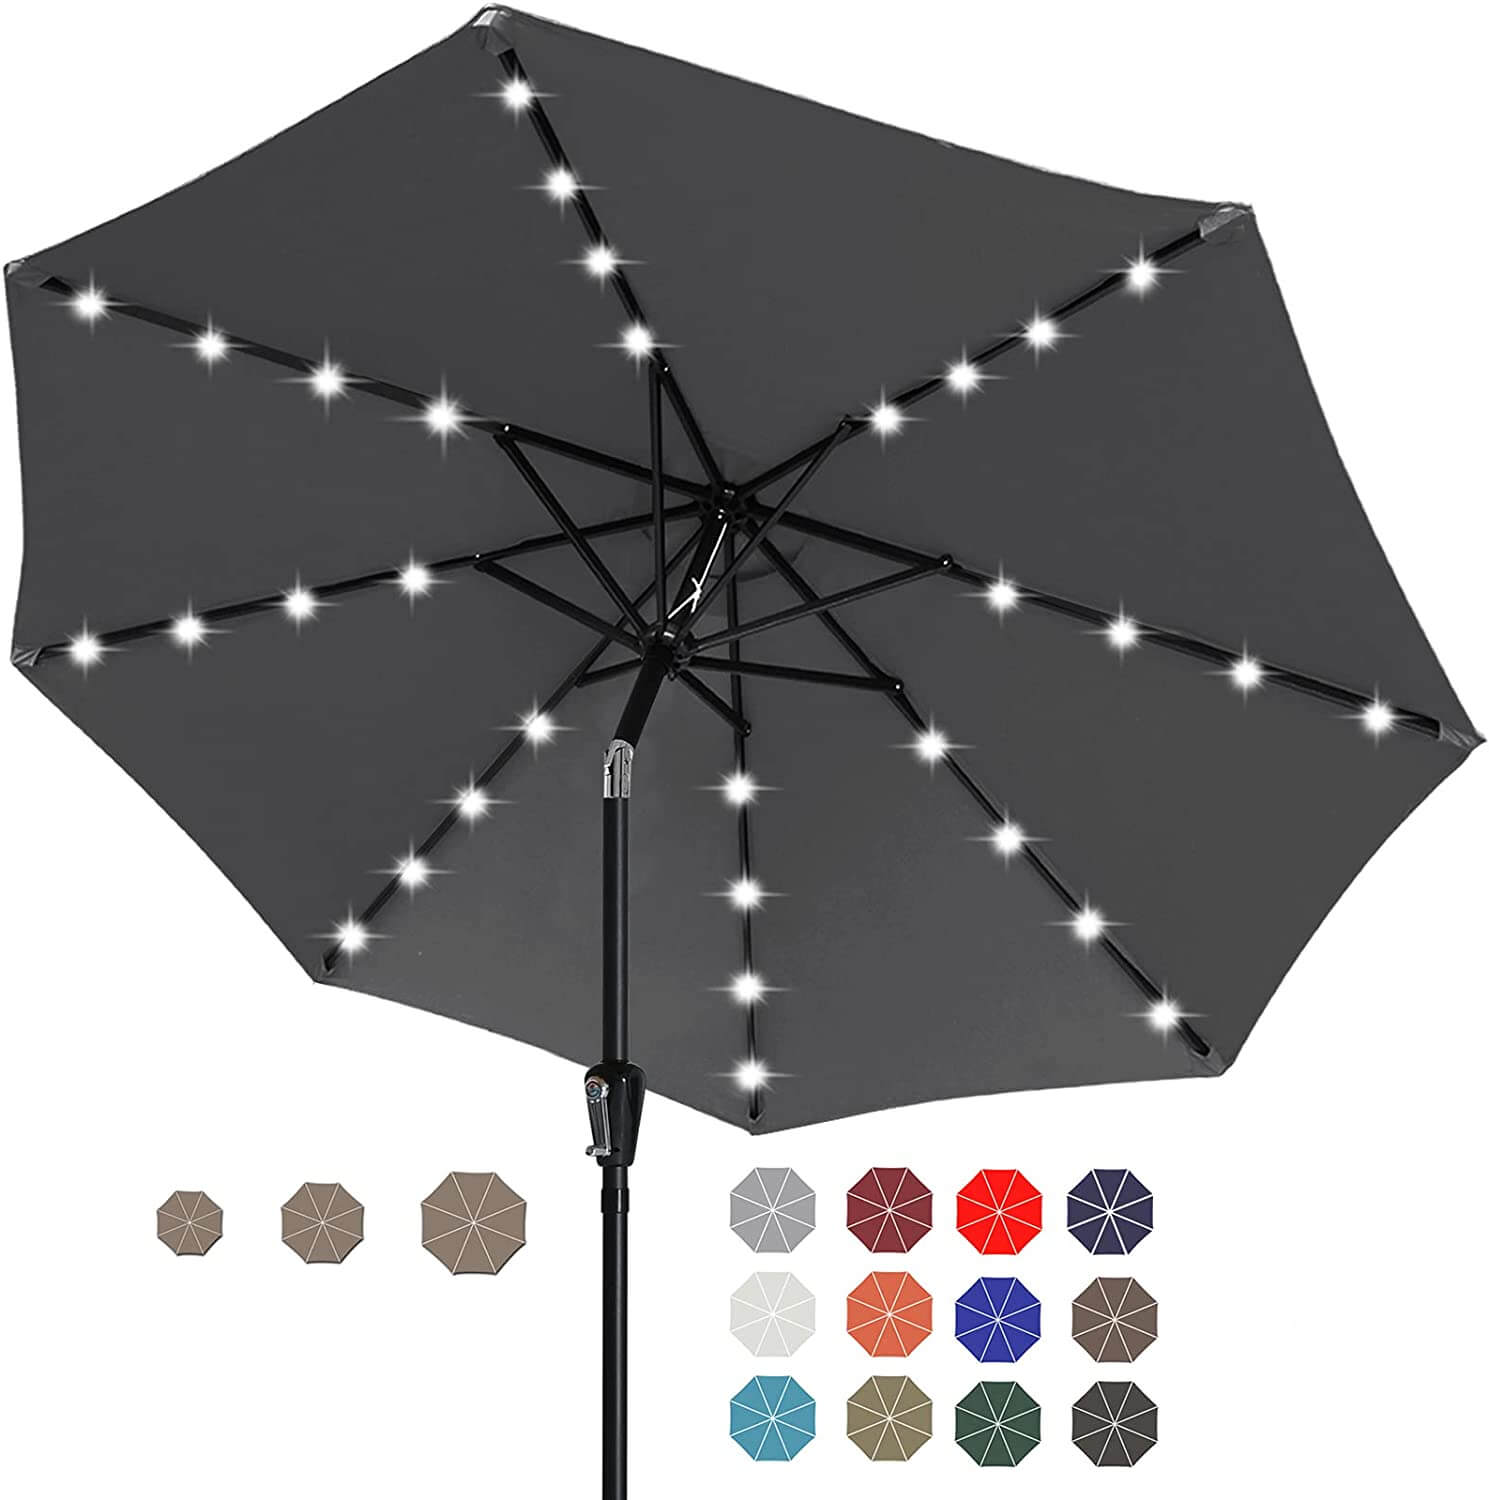 ABCCANOPY Solar Patio Umbrella